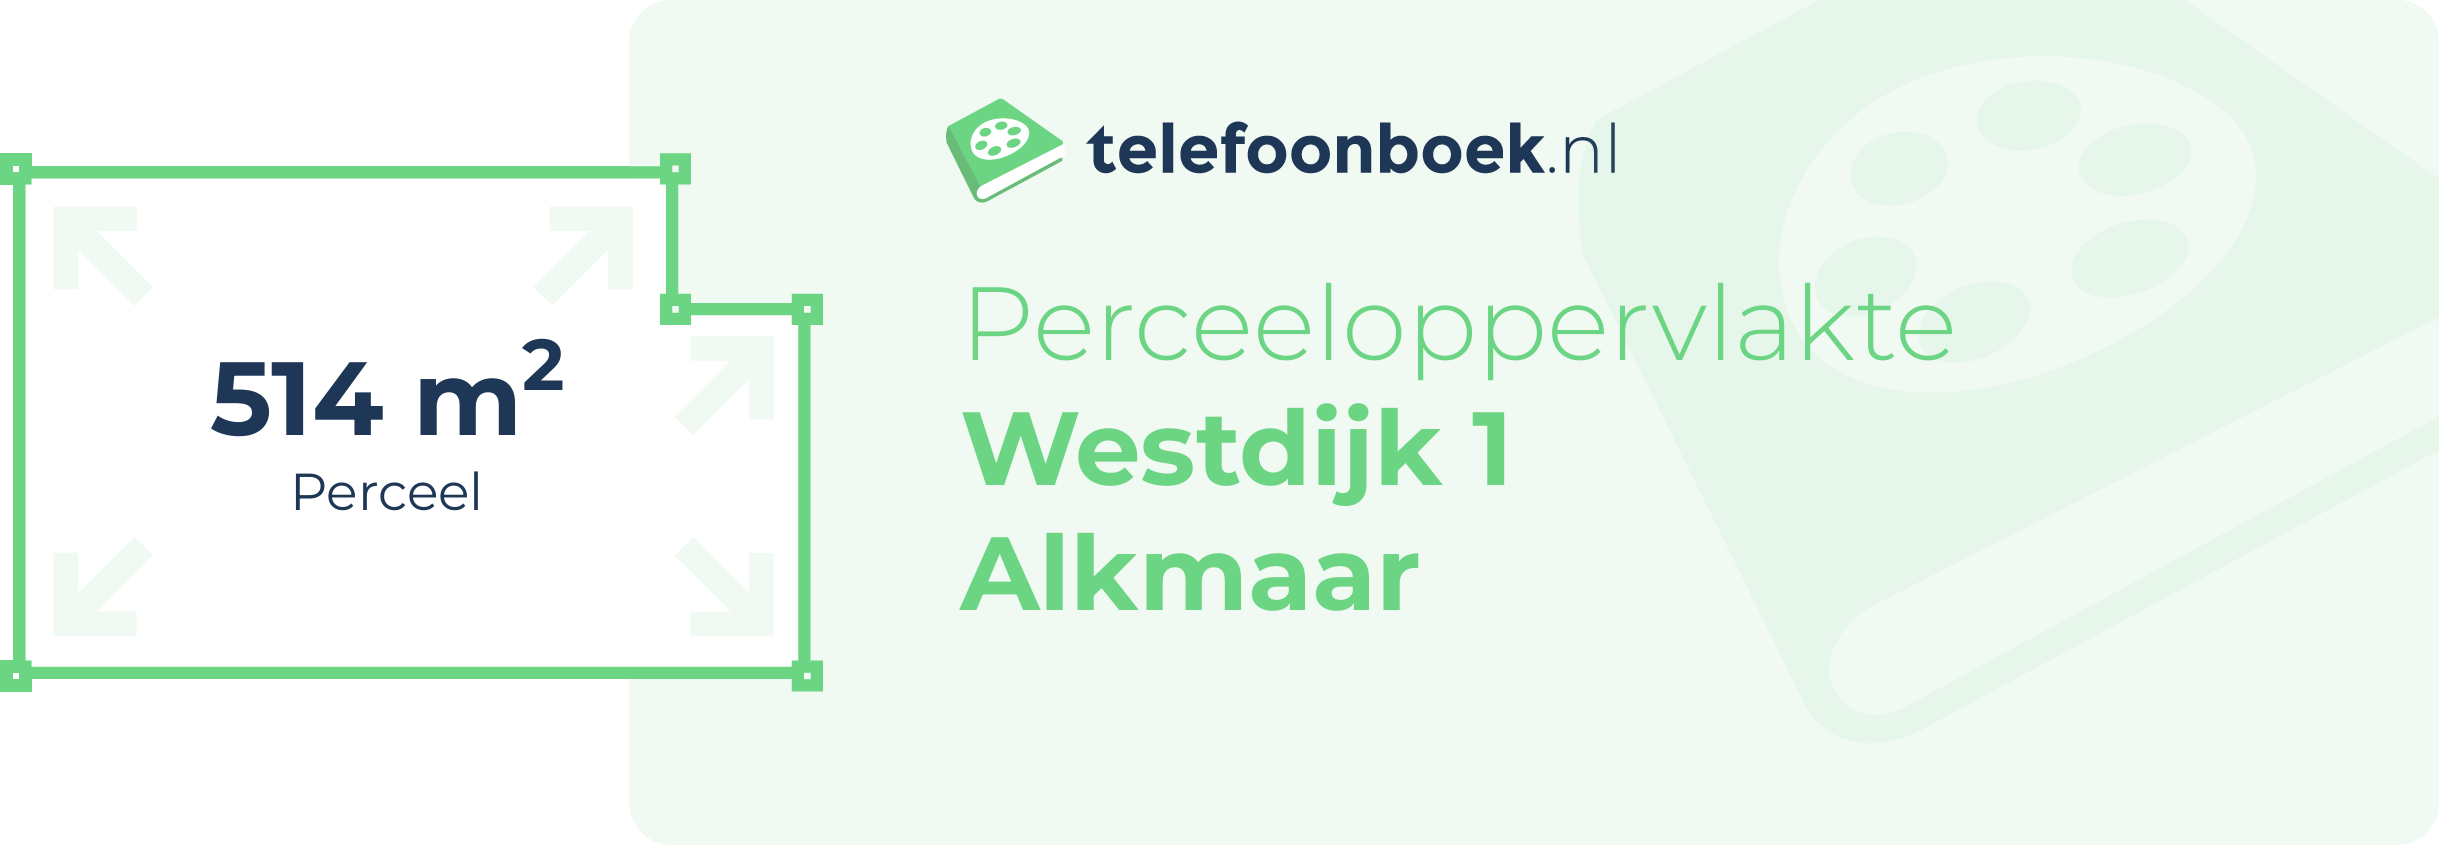 Perceeloppervlakte Westdijk 1 Alkmaar